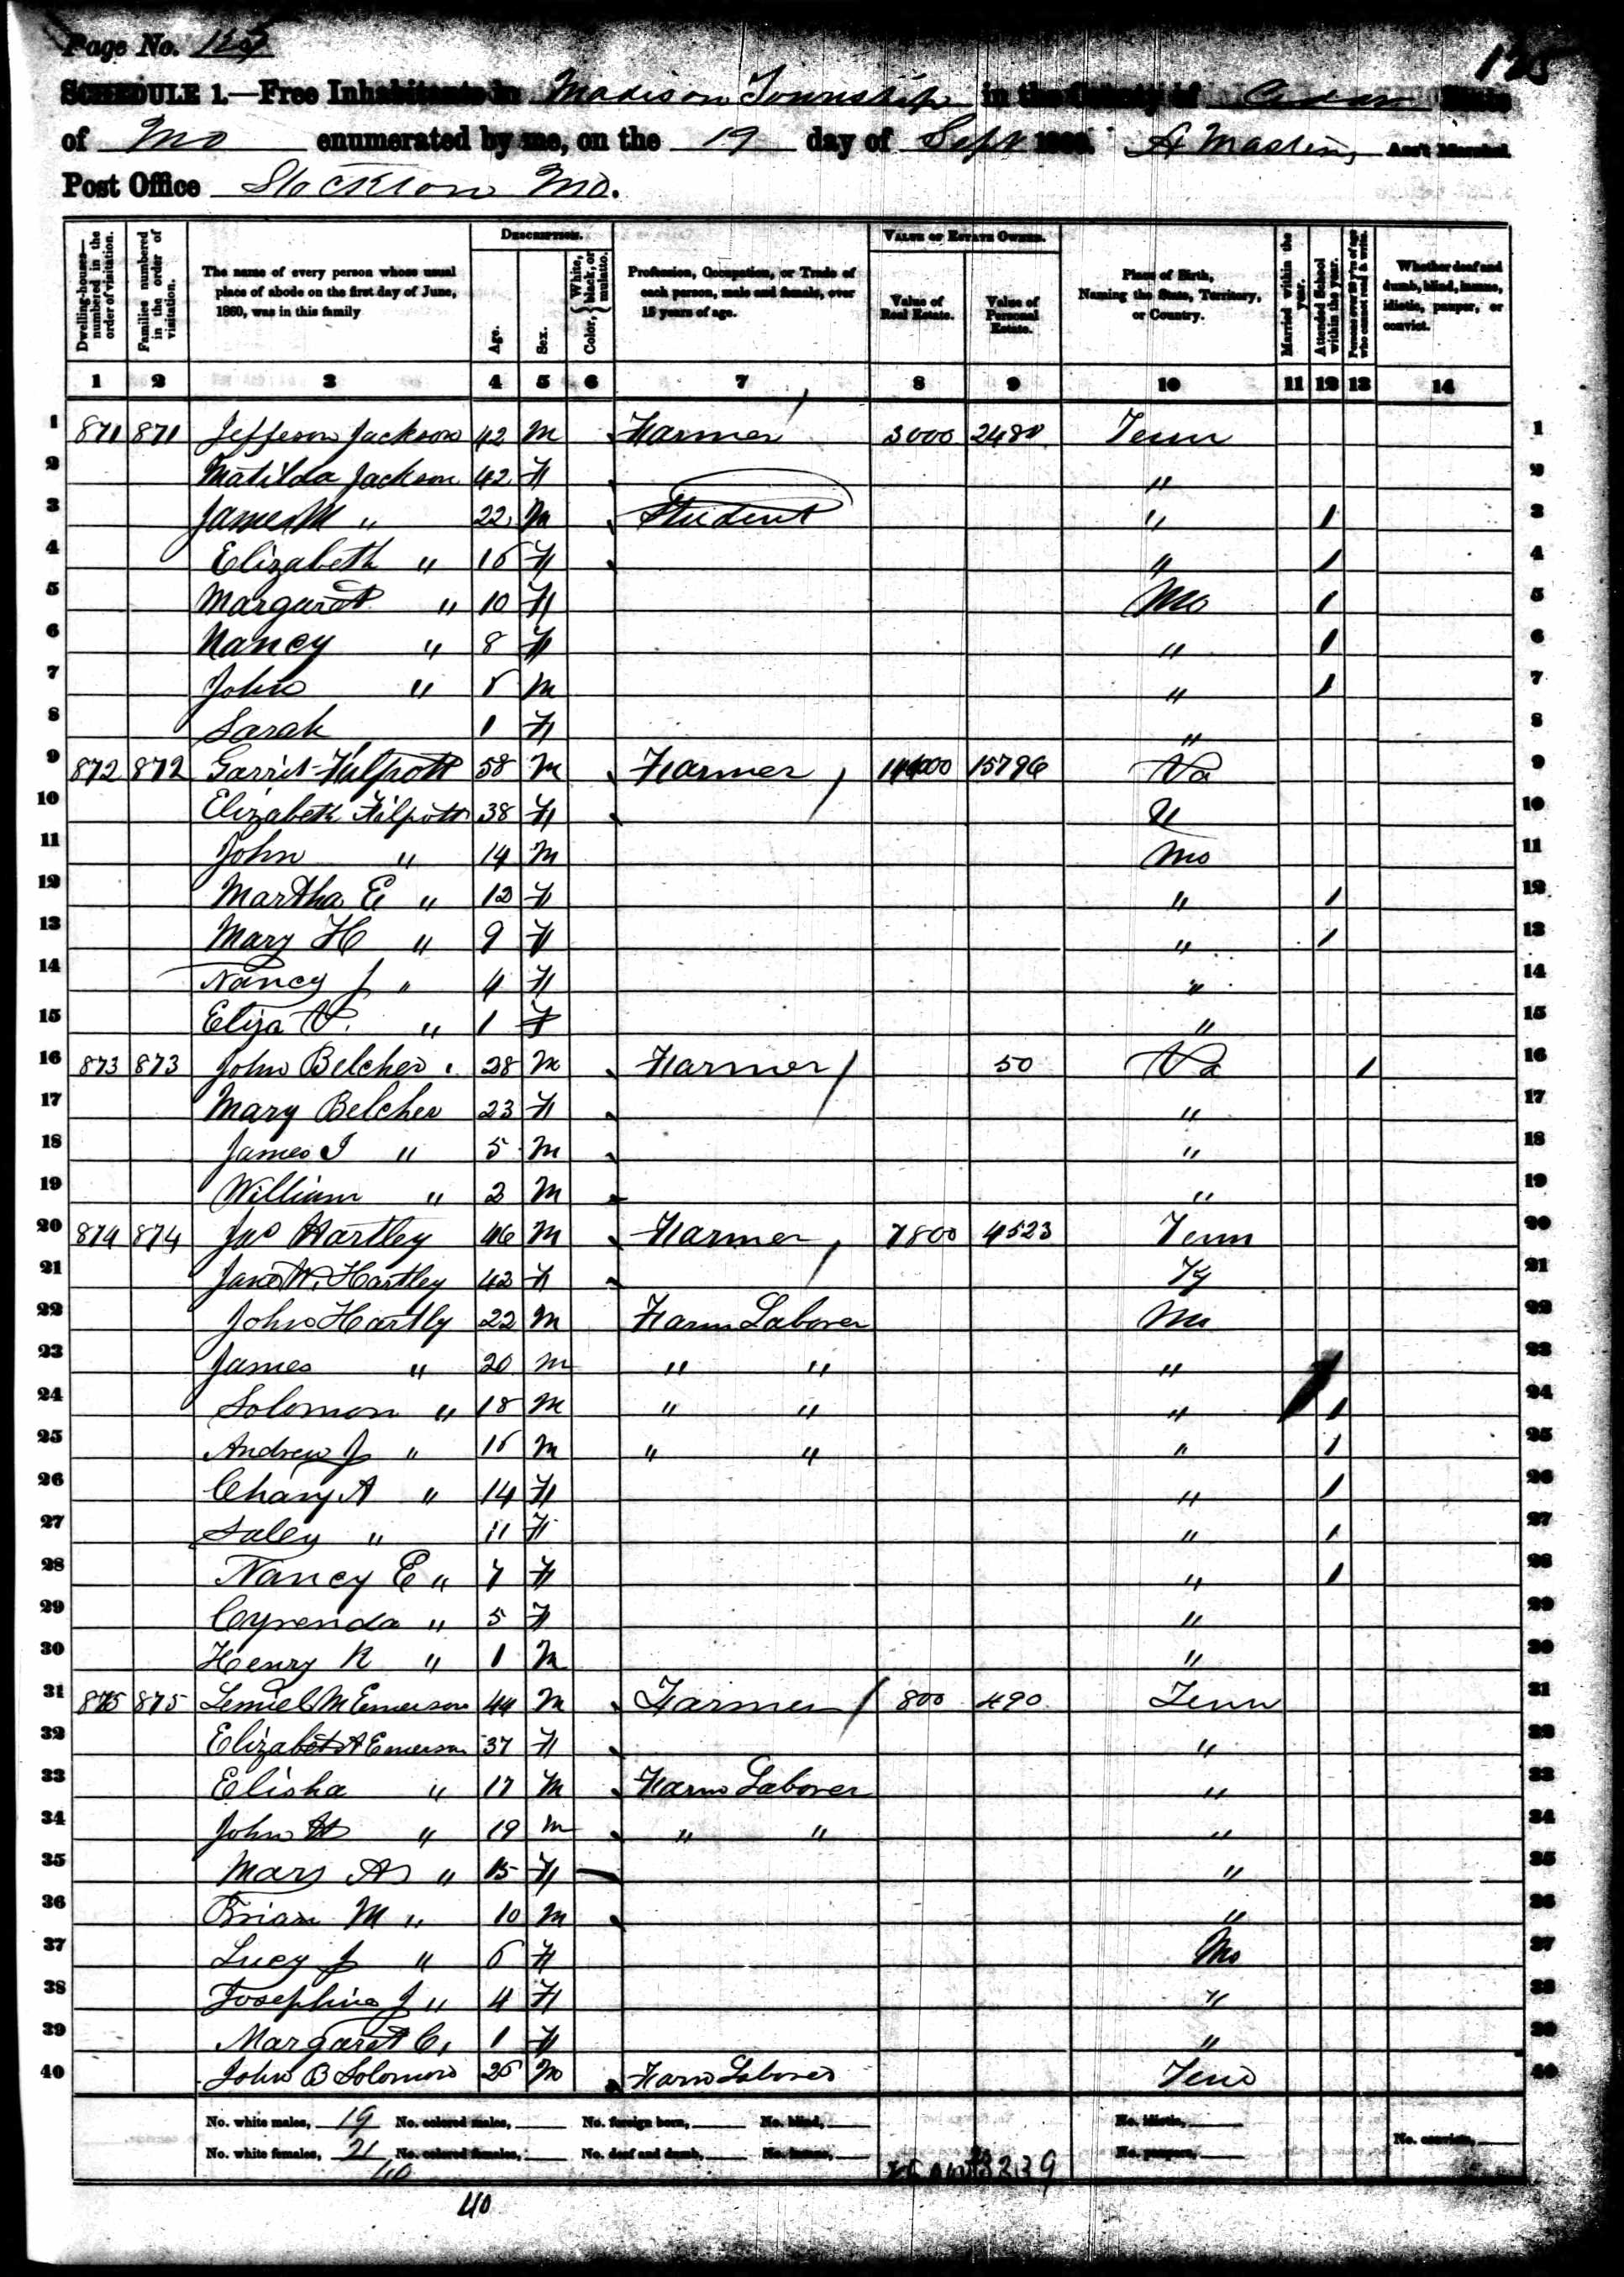 James Hartley, Jr., 1860 Cedar County, Missouri, census